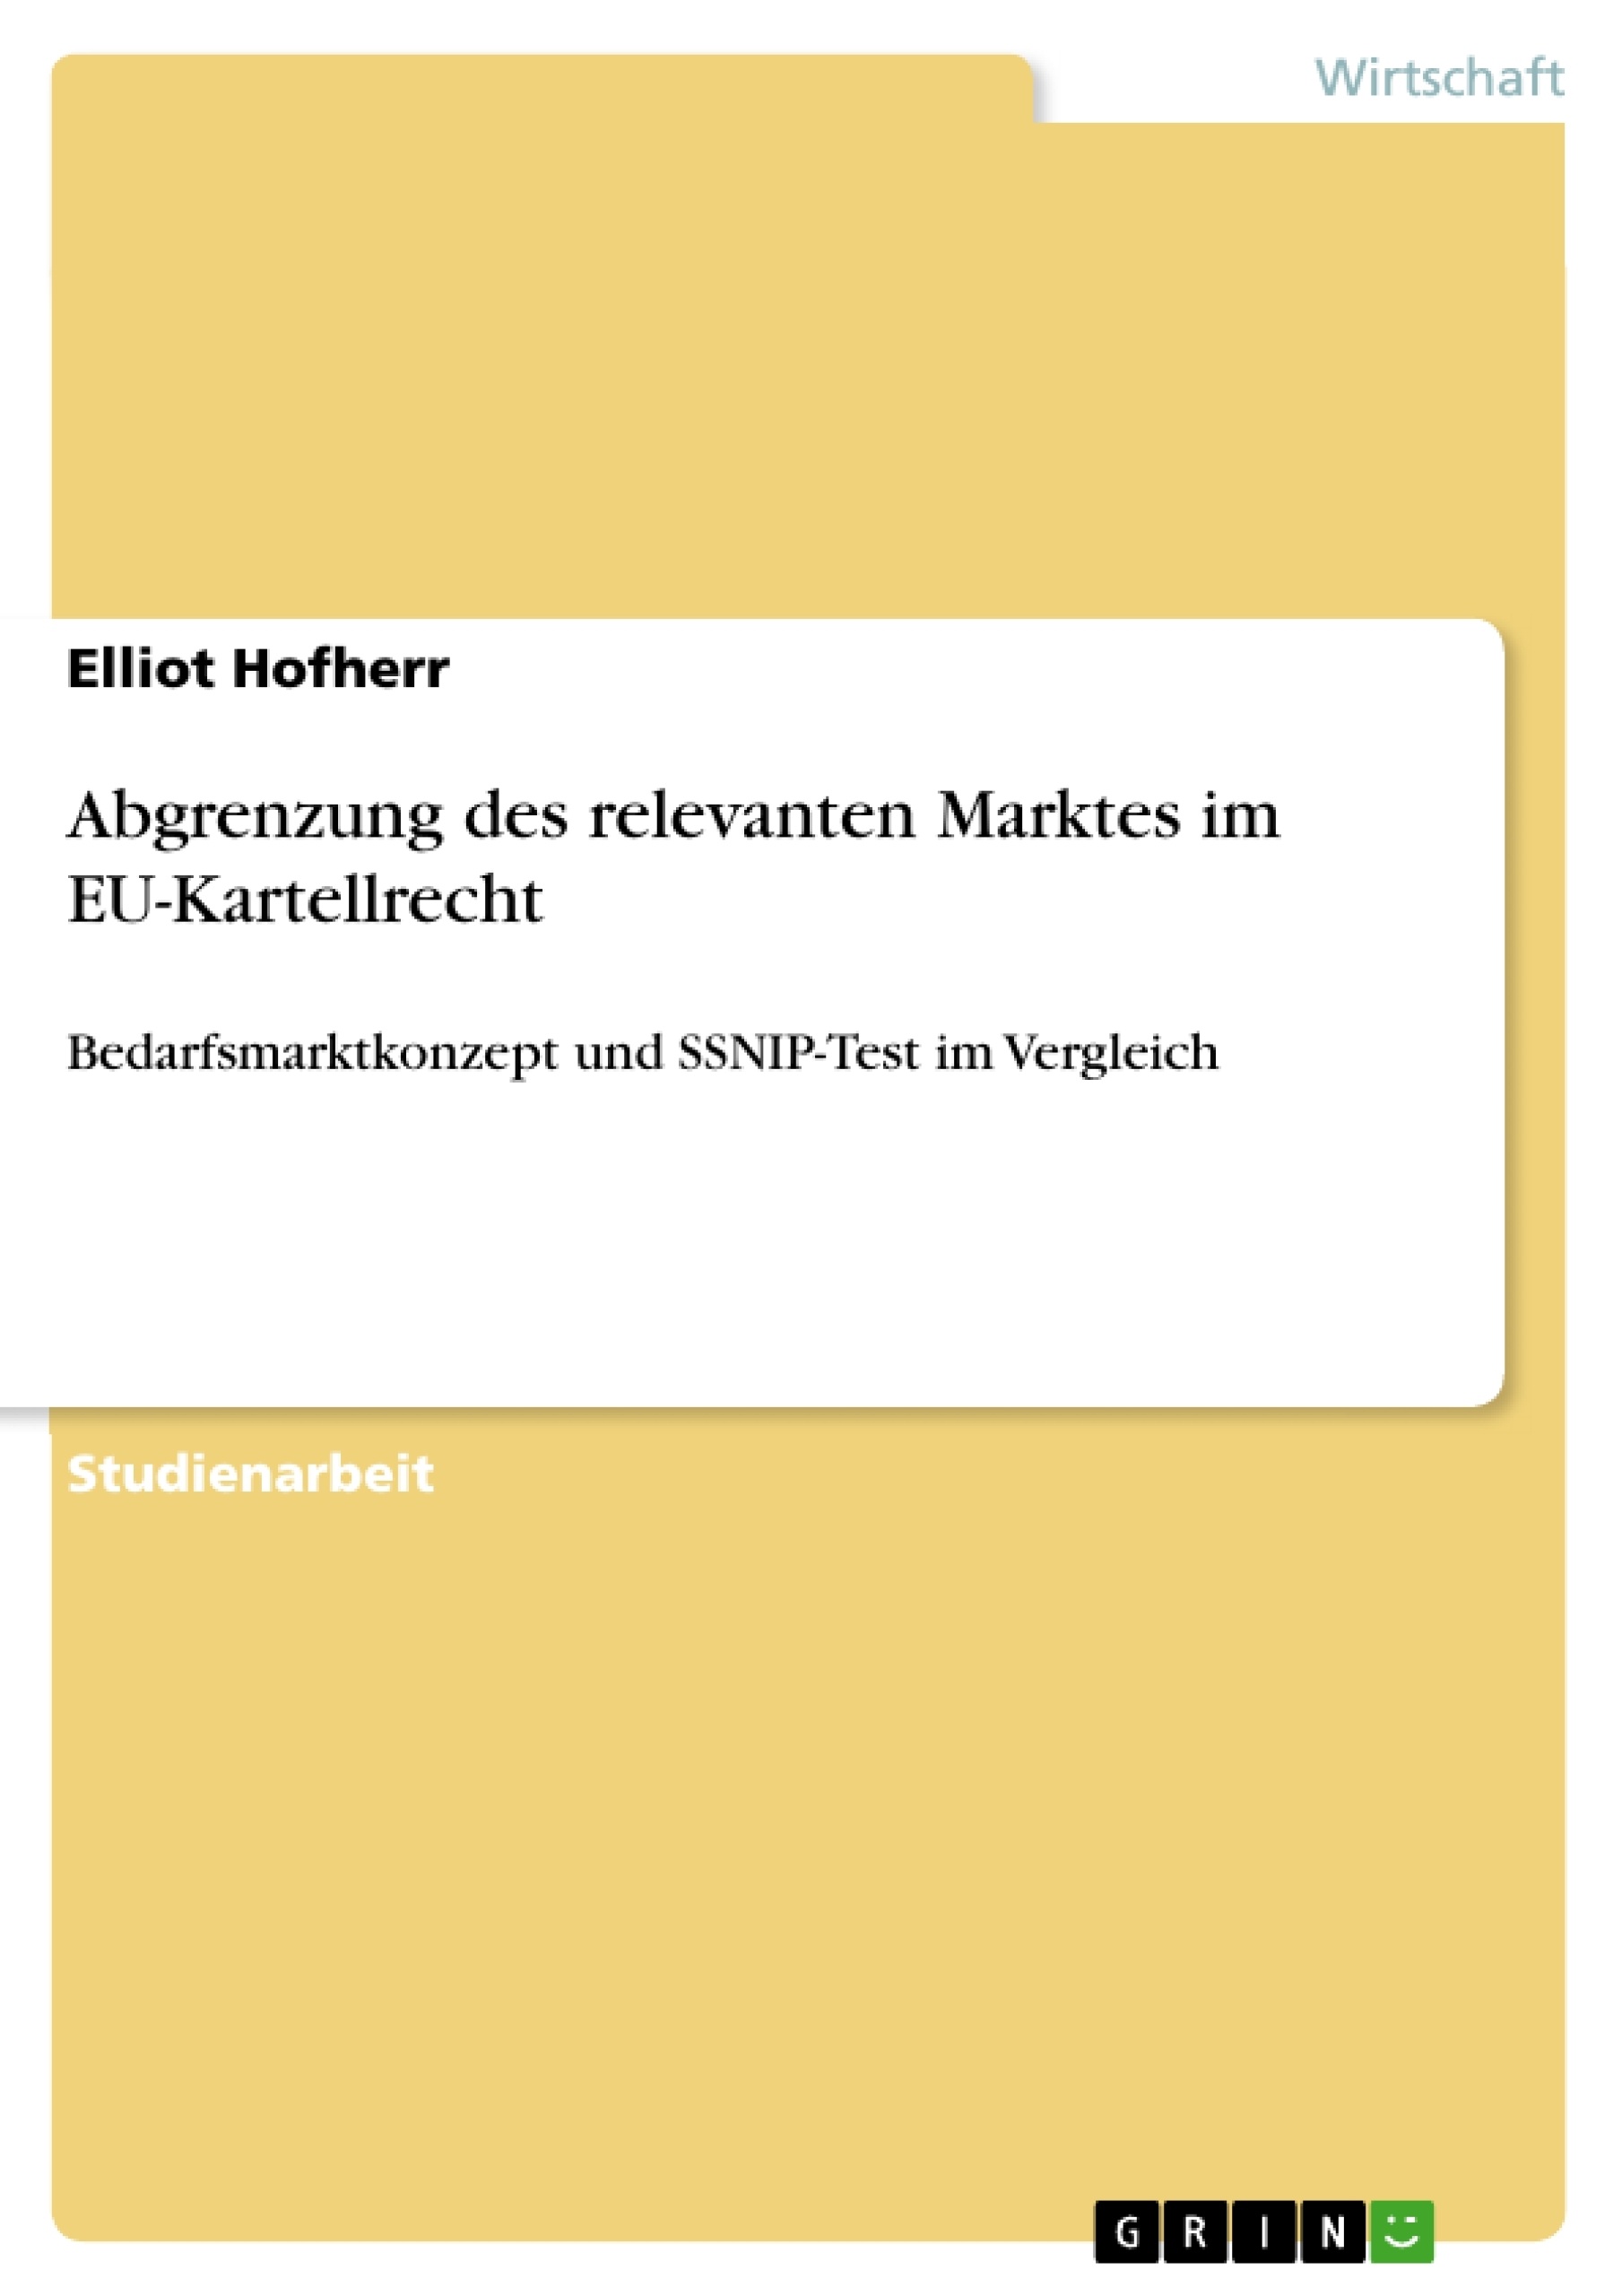 Título: Abgrenzung des relevanten Marktes im EU-Kartellrecht